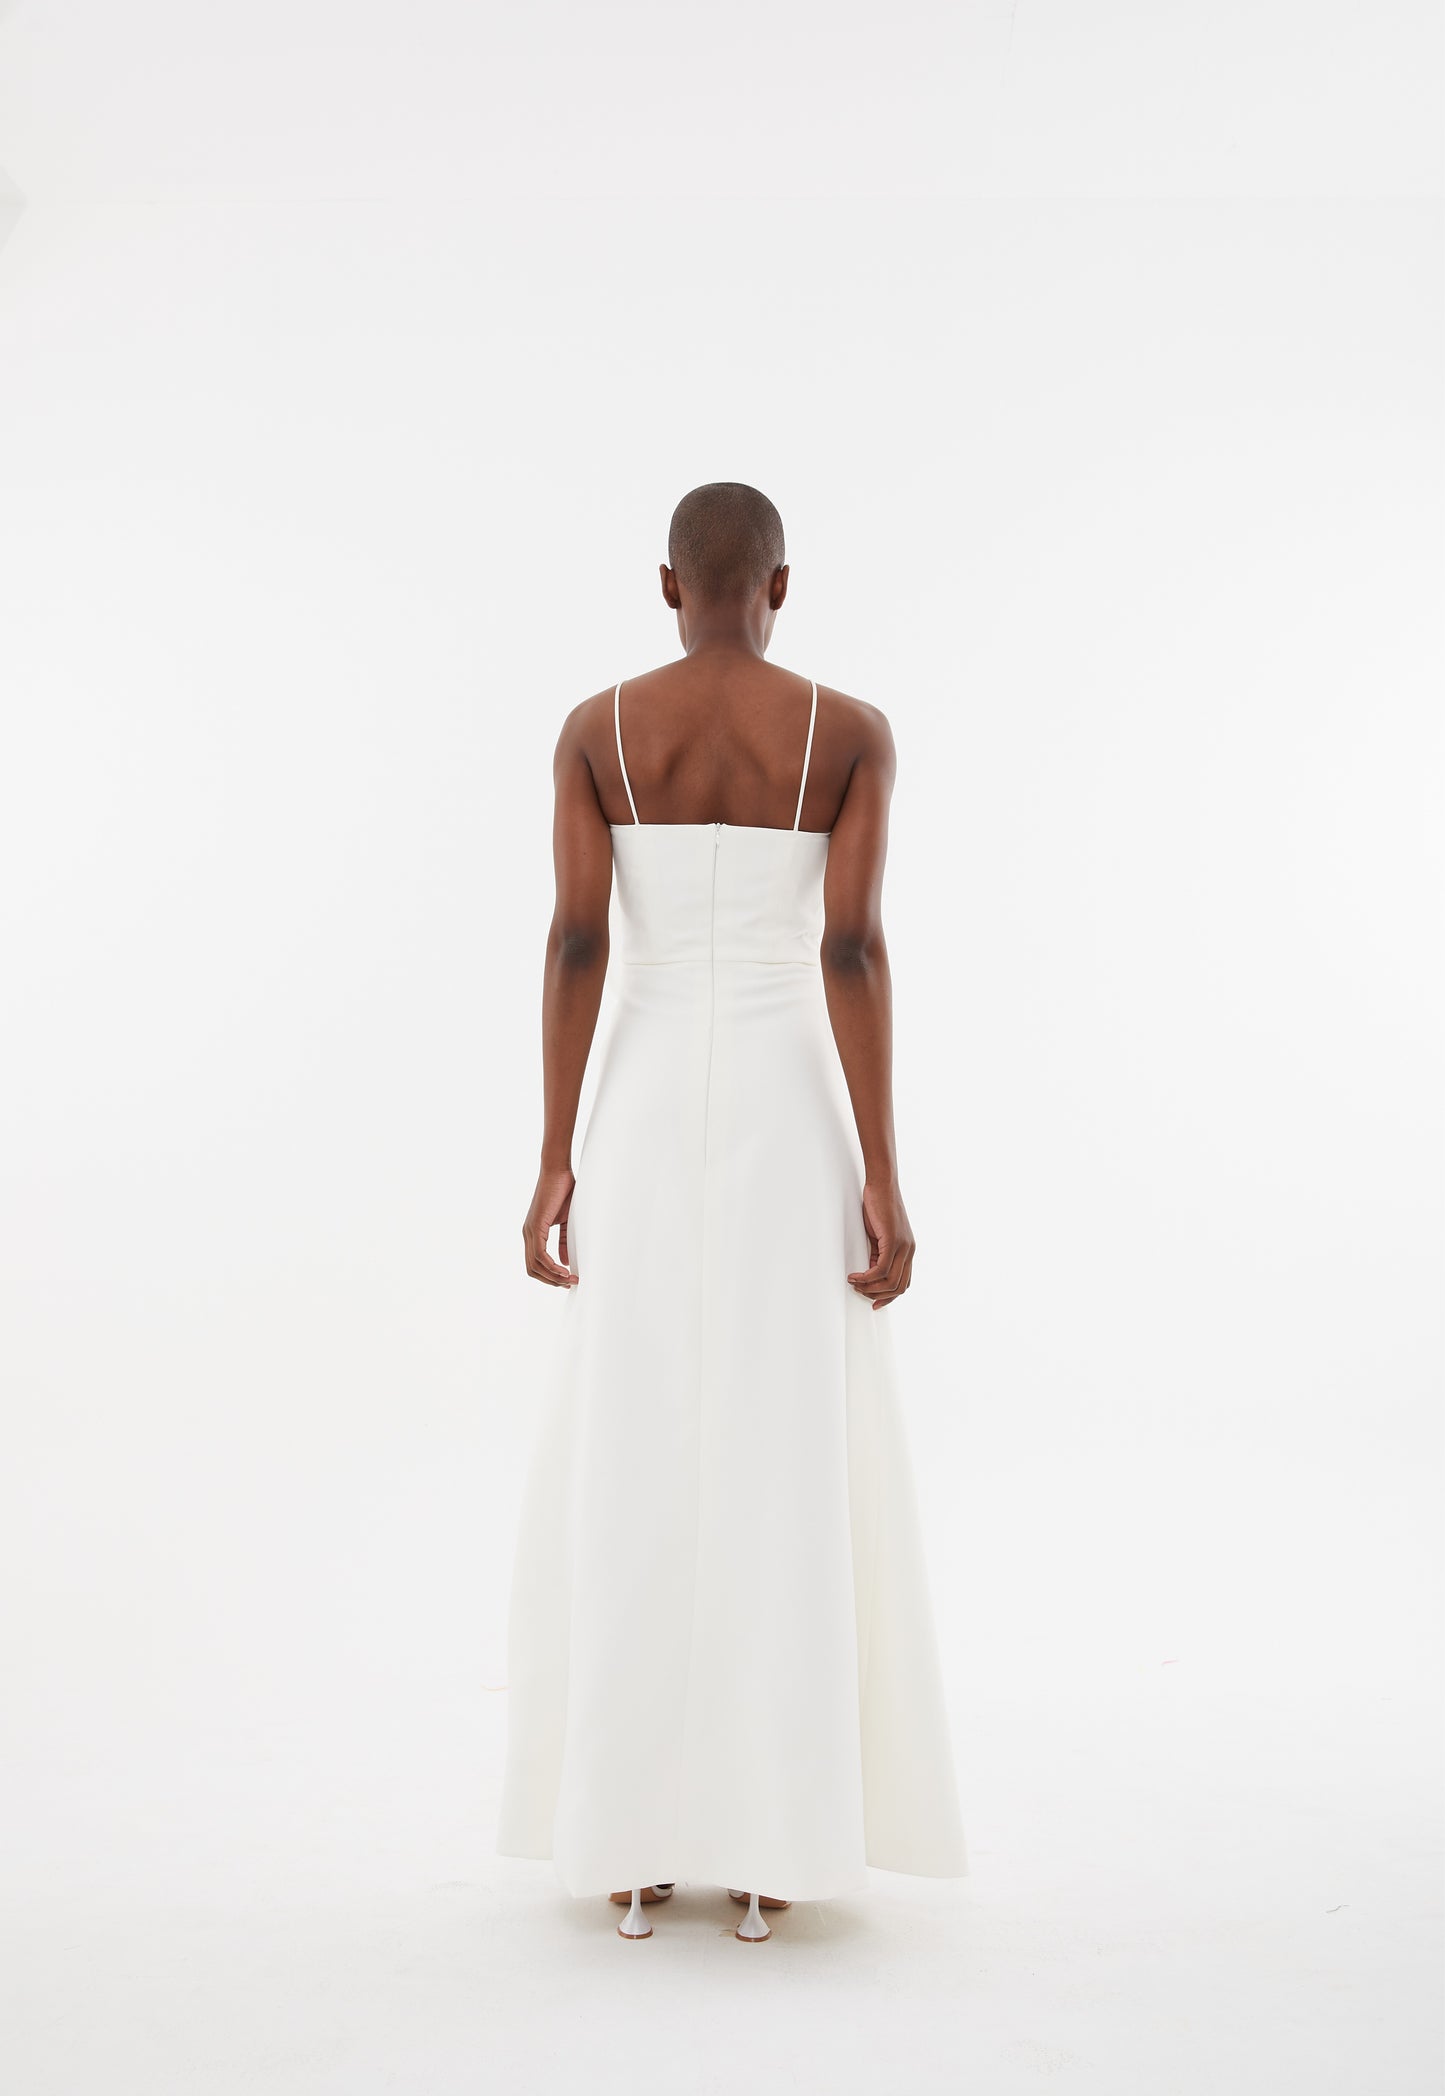 LAGOON DRESS - WHITE